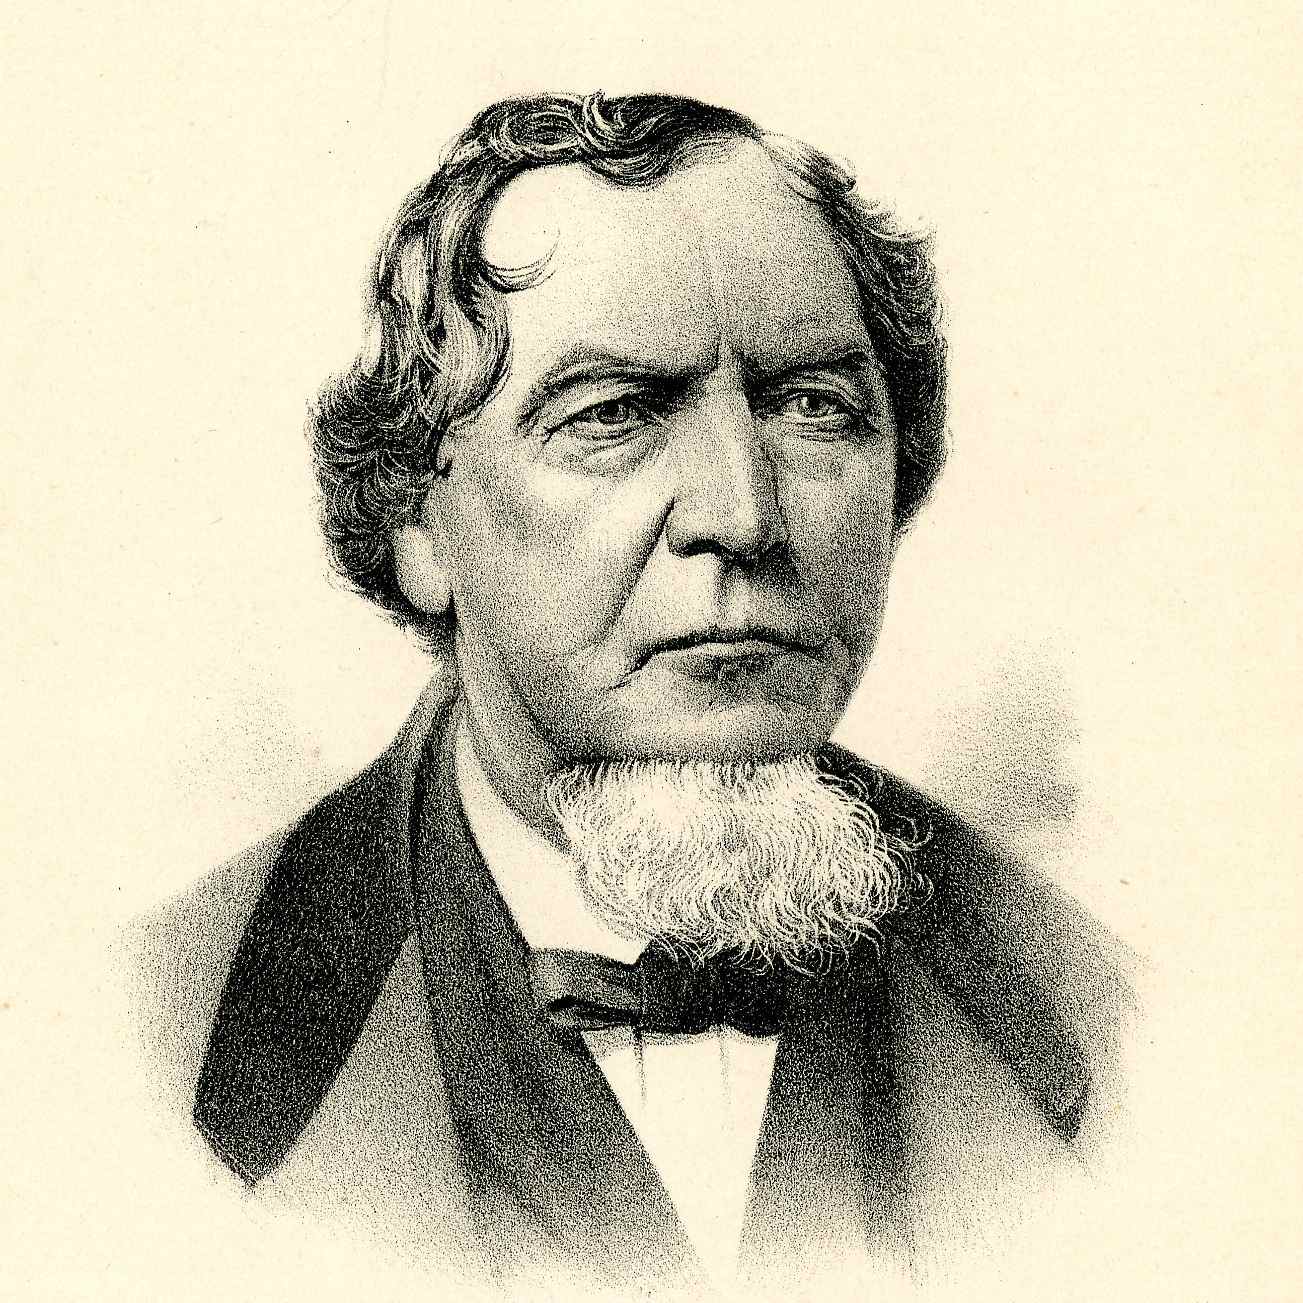 Robert Pixton (1819 - 1881)